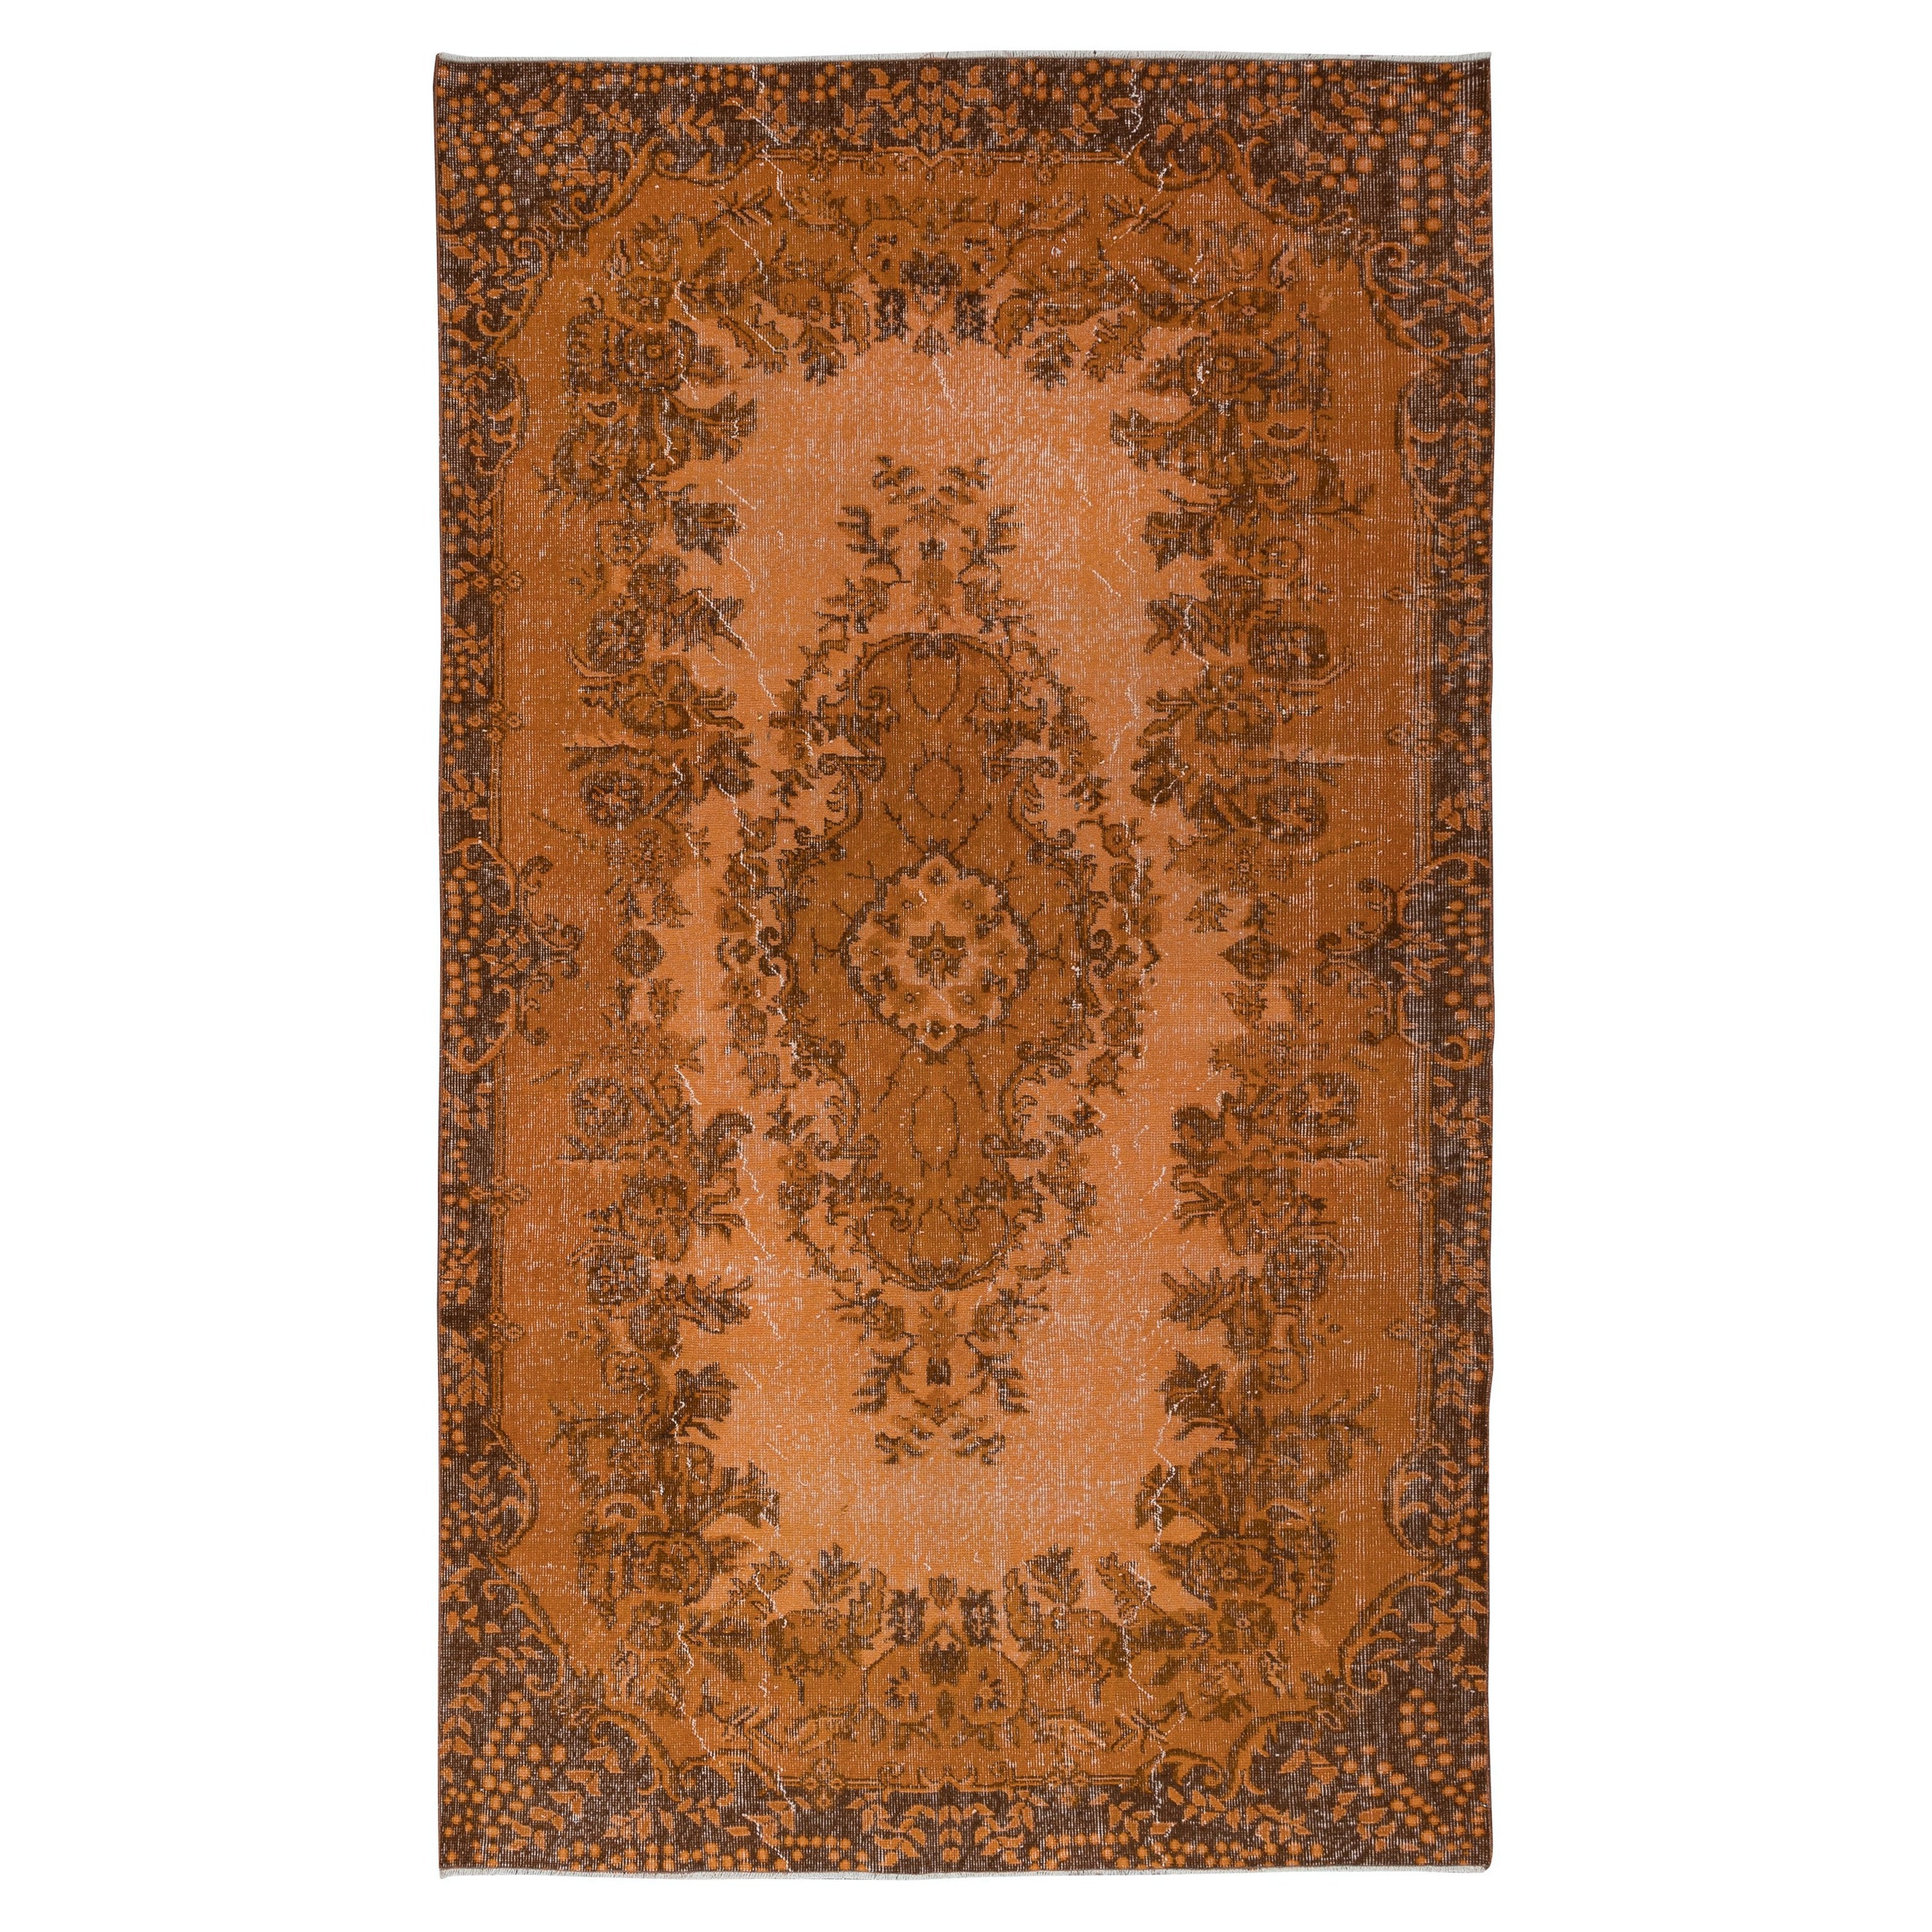 5.6x9,4 Ft authentischer orangefarbener Teppich für moderne Inneneinrichtung, handgefertigter Anatolischer Teppich